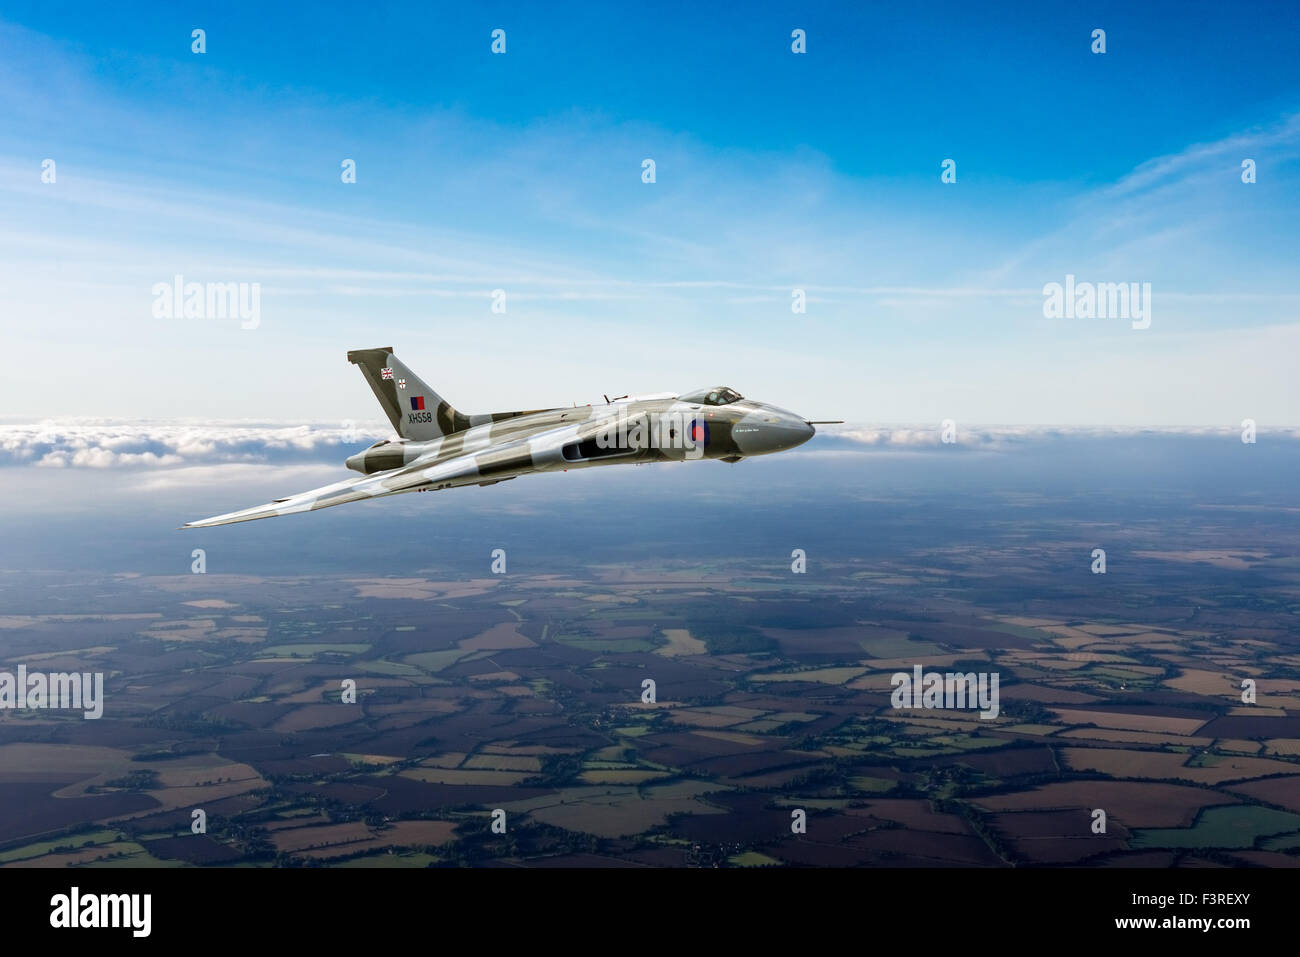 Una representación de un Avro Vulcan ala delta bombardero estratégico en los cielos de la campiña británica. Foto de stock